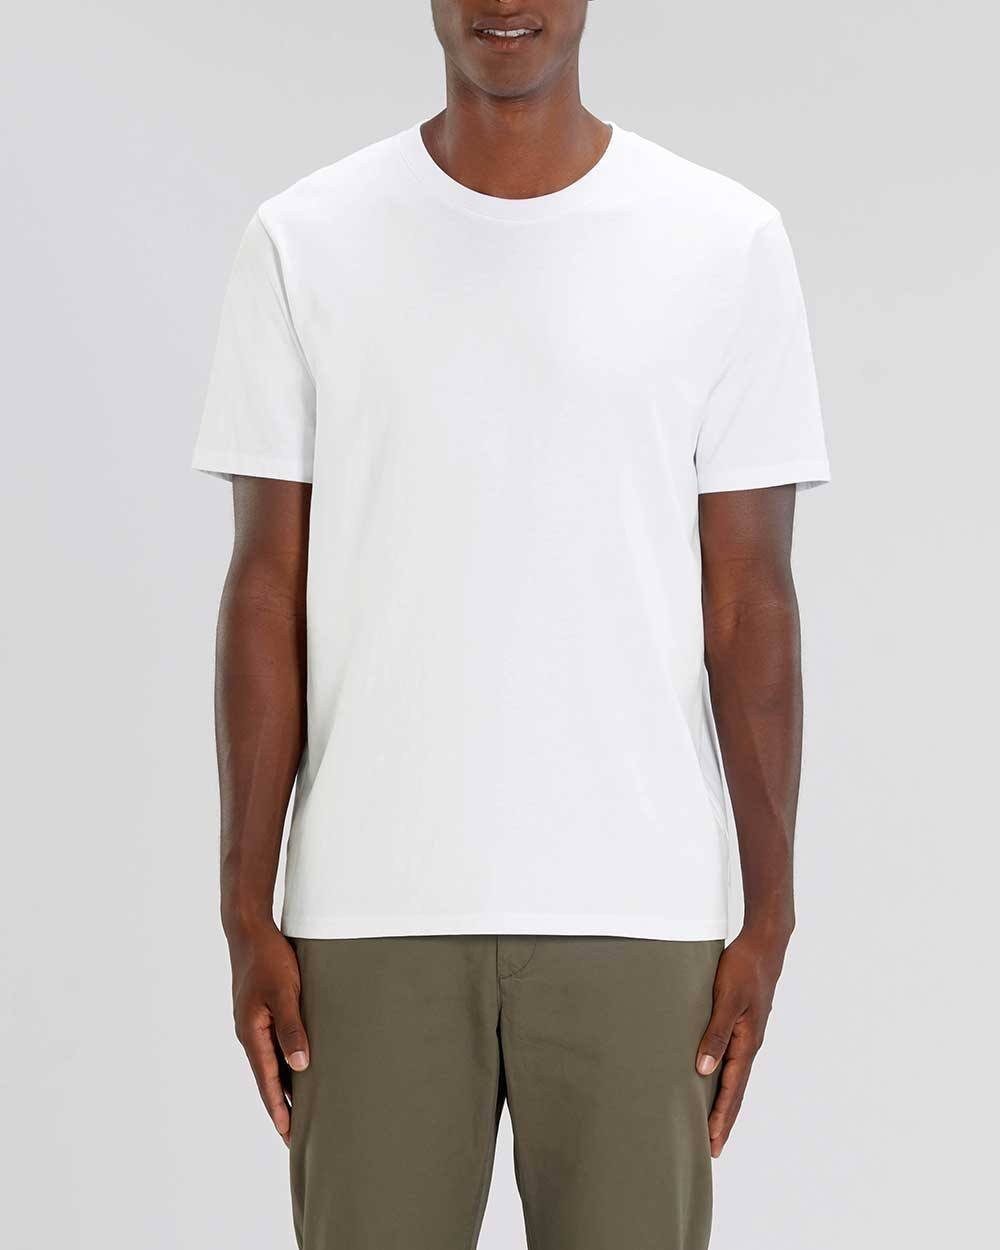 T-Shirt Pack, Männer Bio-Baumwolle, T-Shirt 2er Weiß schwere Basic, 220g/m² YTWOO